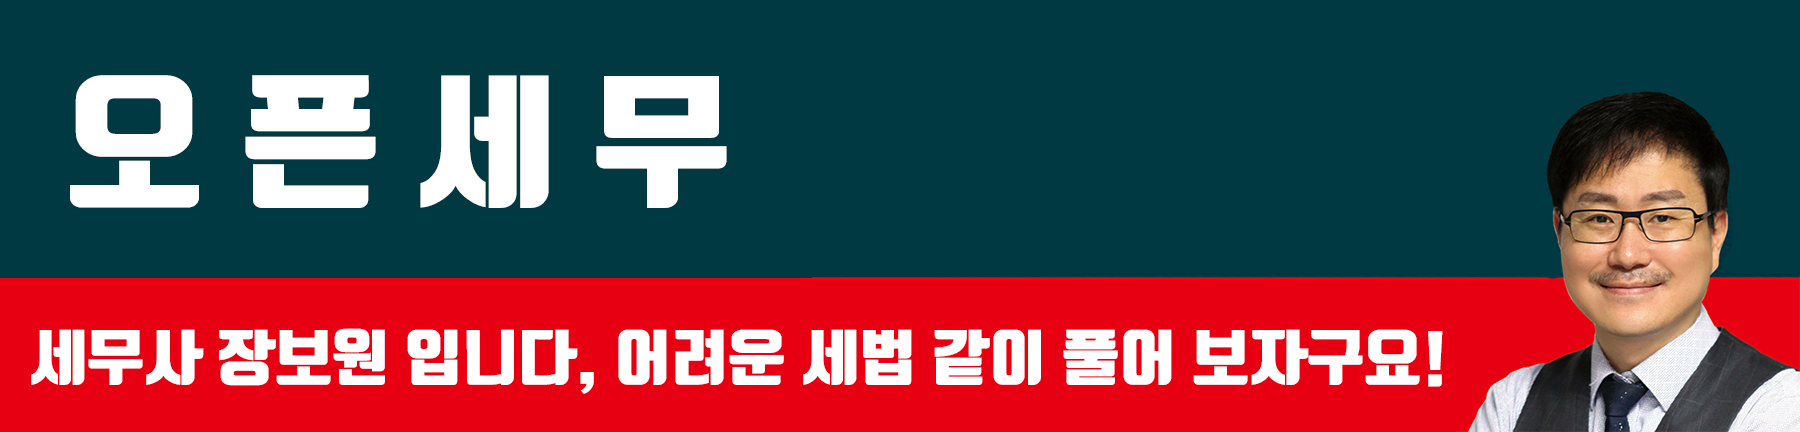 오픈세무닷컴 - 세무사 장보원